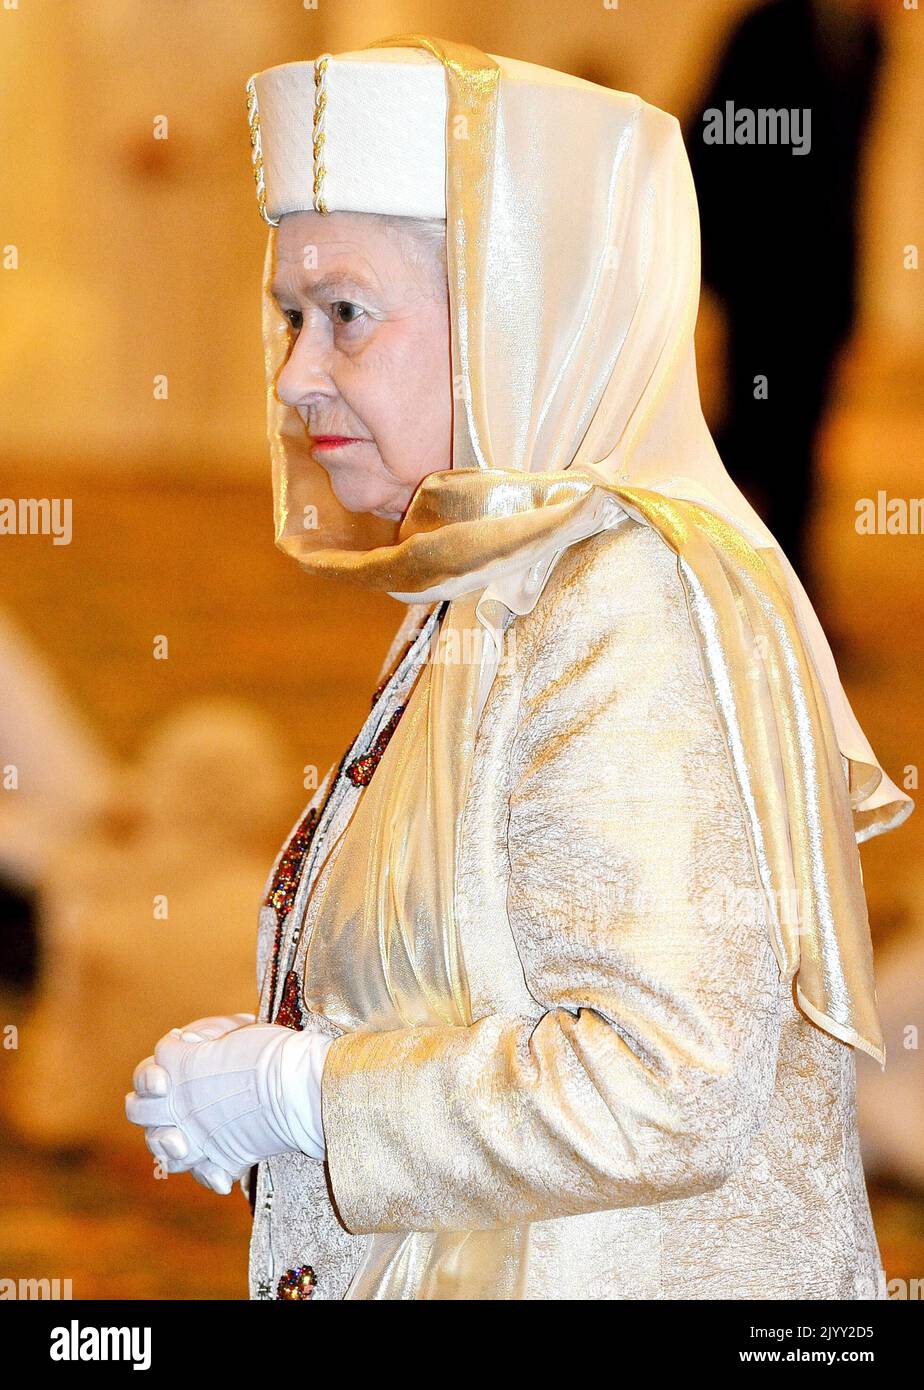 Foto del archivo fechada el 24/11/2010 de la Reina Isabel II caminando por la Gran Mezquita Sheikh Zayed en Abu Dhabi, como parte de una visita estatal de cinco días al Golfo. Fecha de emisión: Jueves 8 de septiembre de 2022. Foto de stock